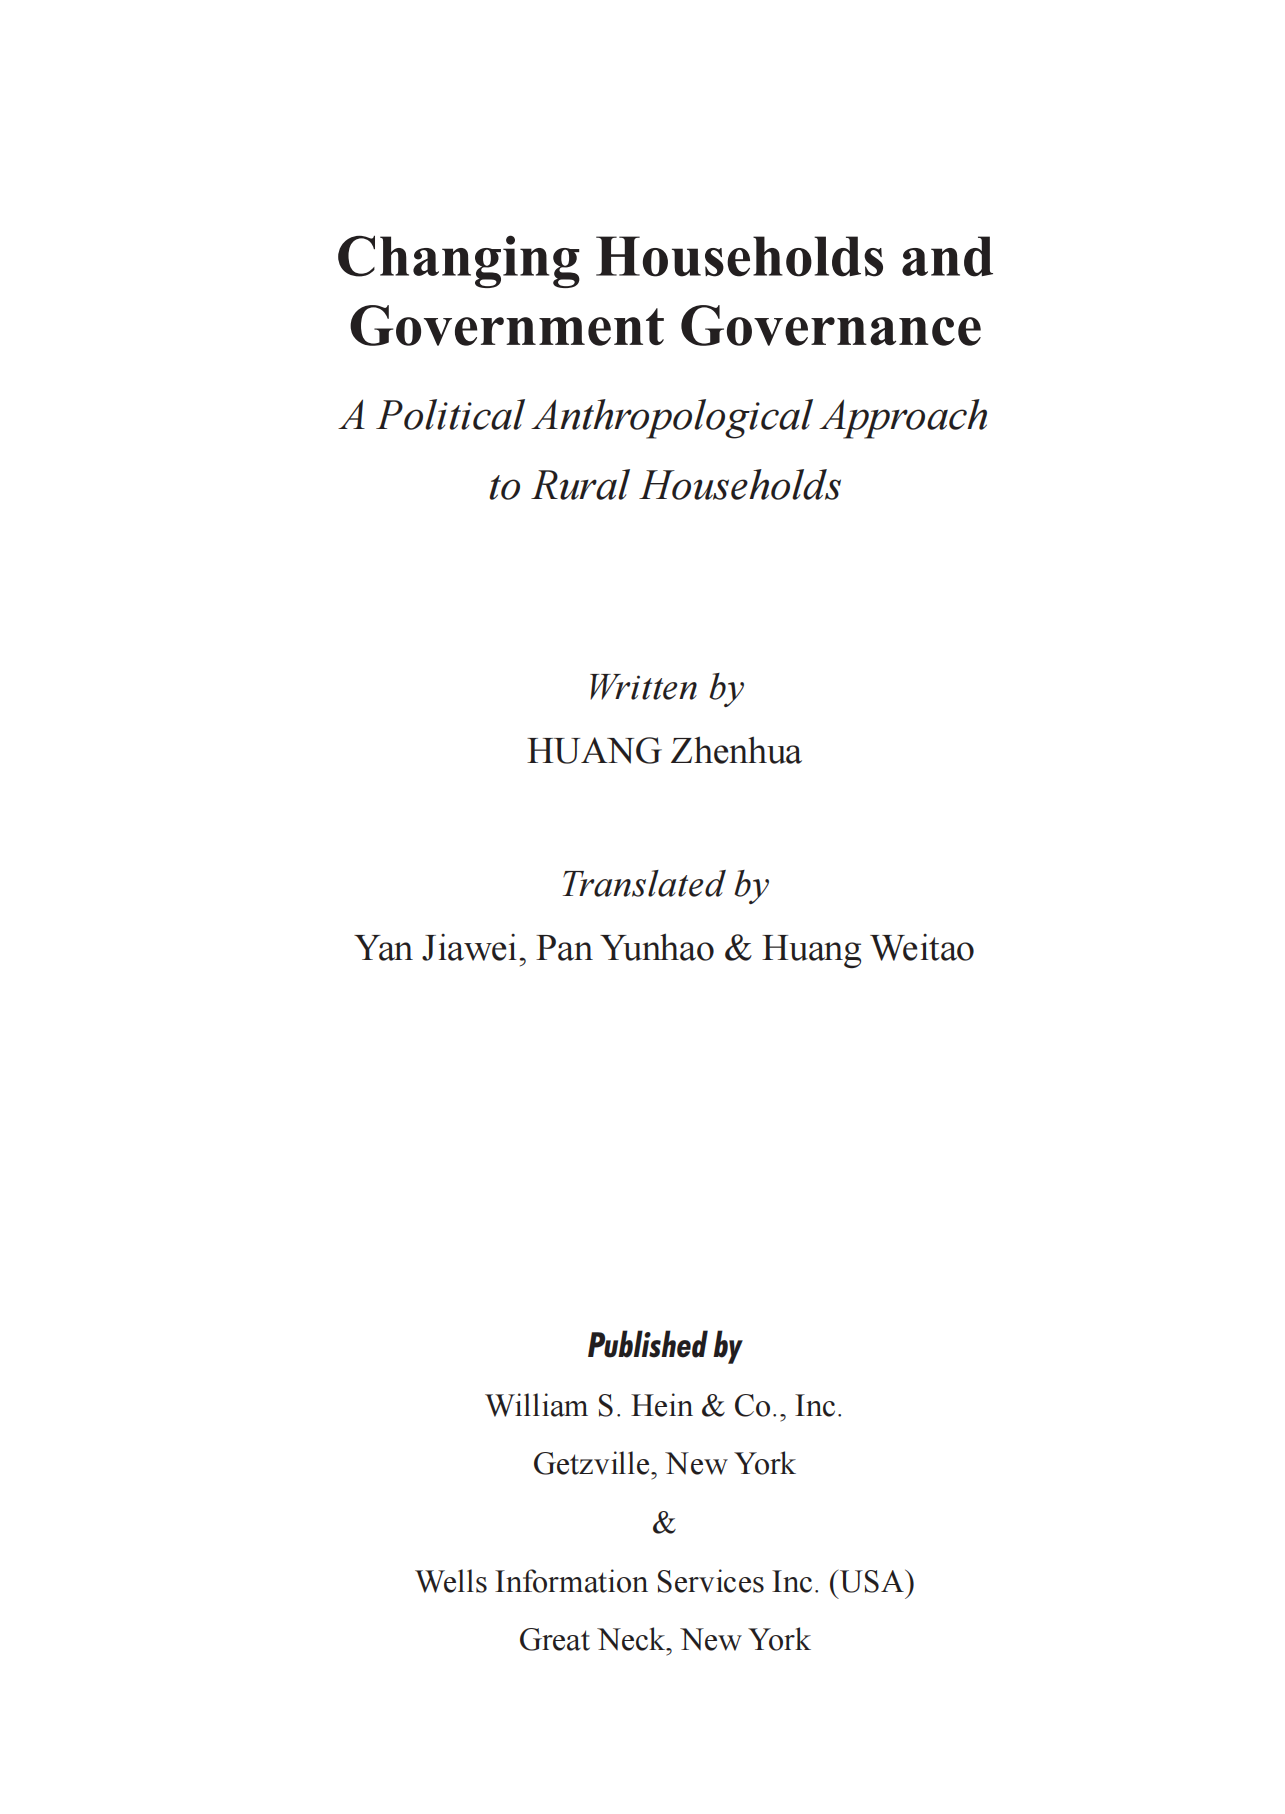 提取自Changing Households and Government Governance.png